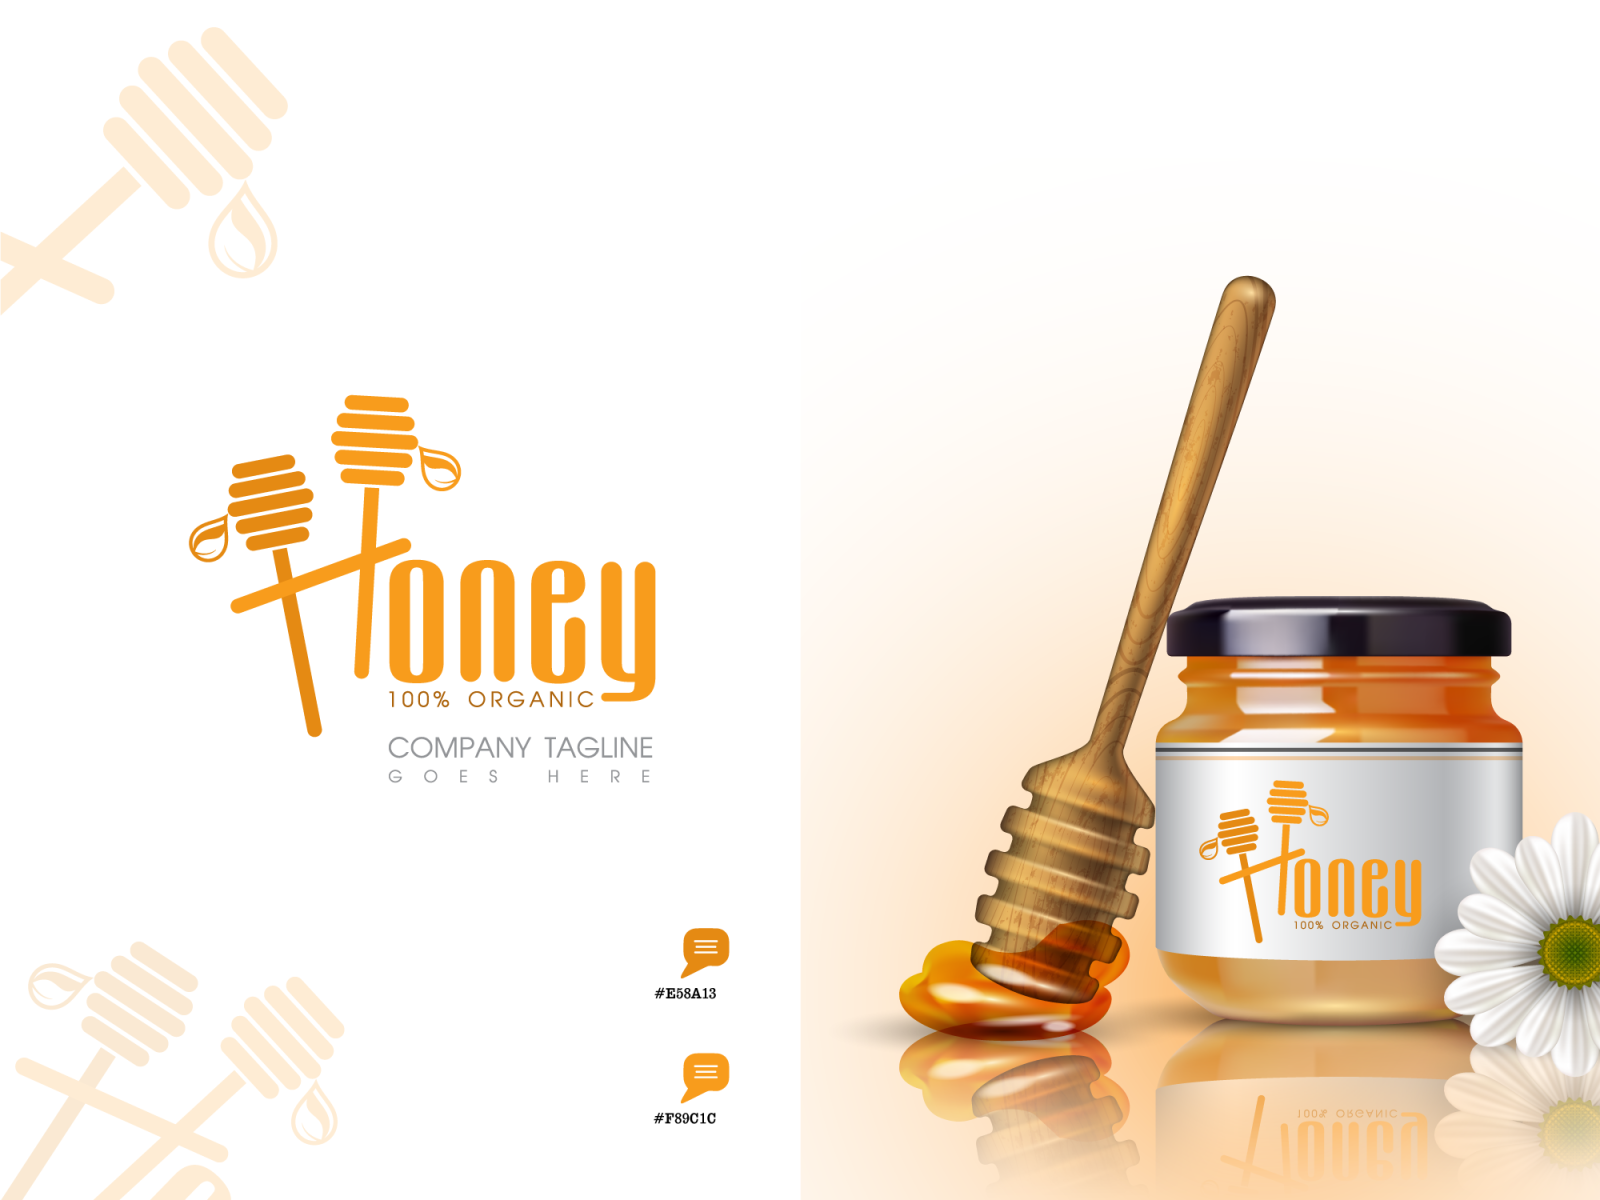 Логотип Honey